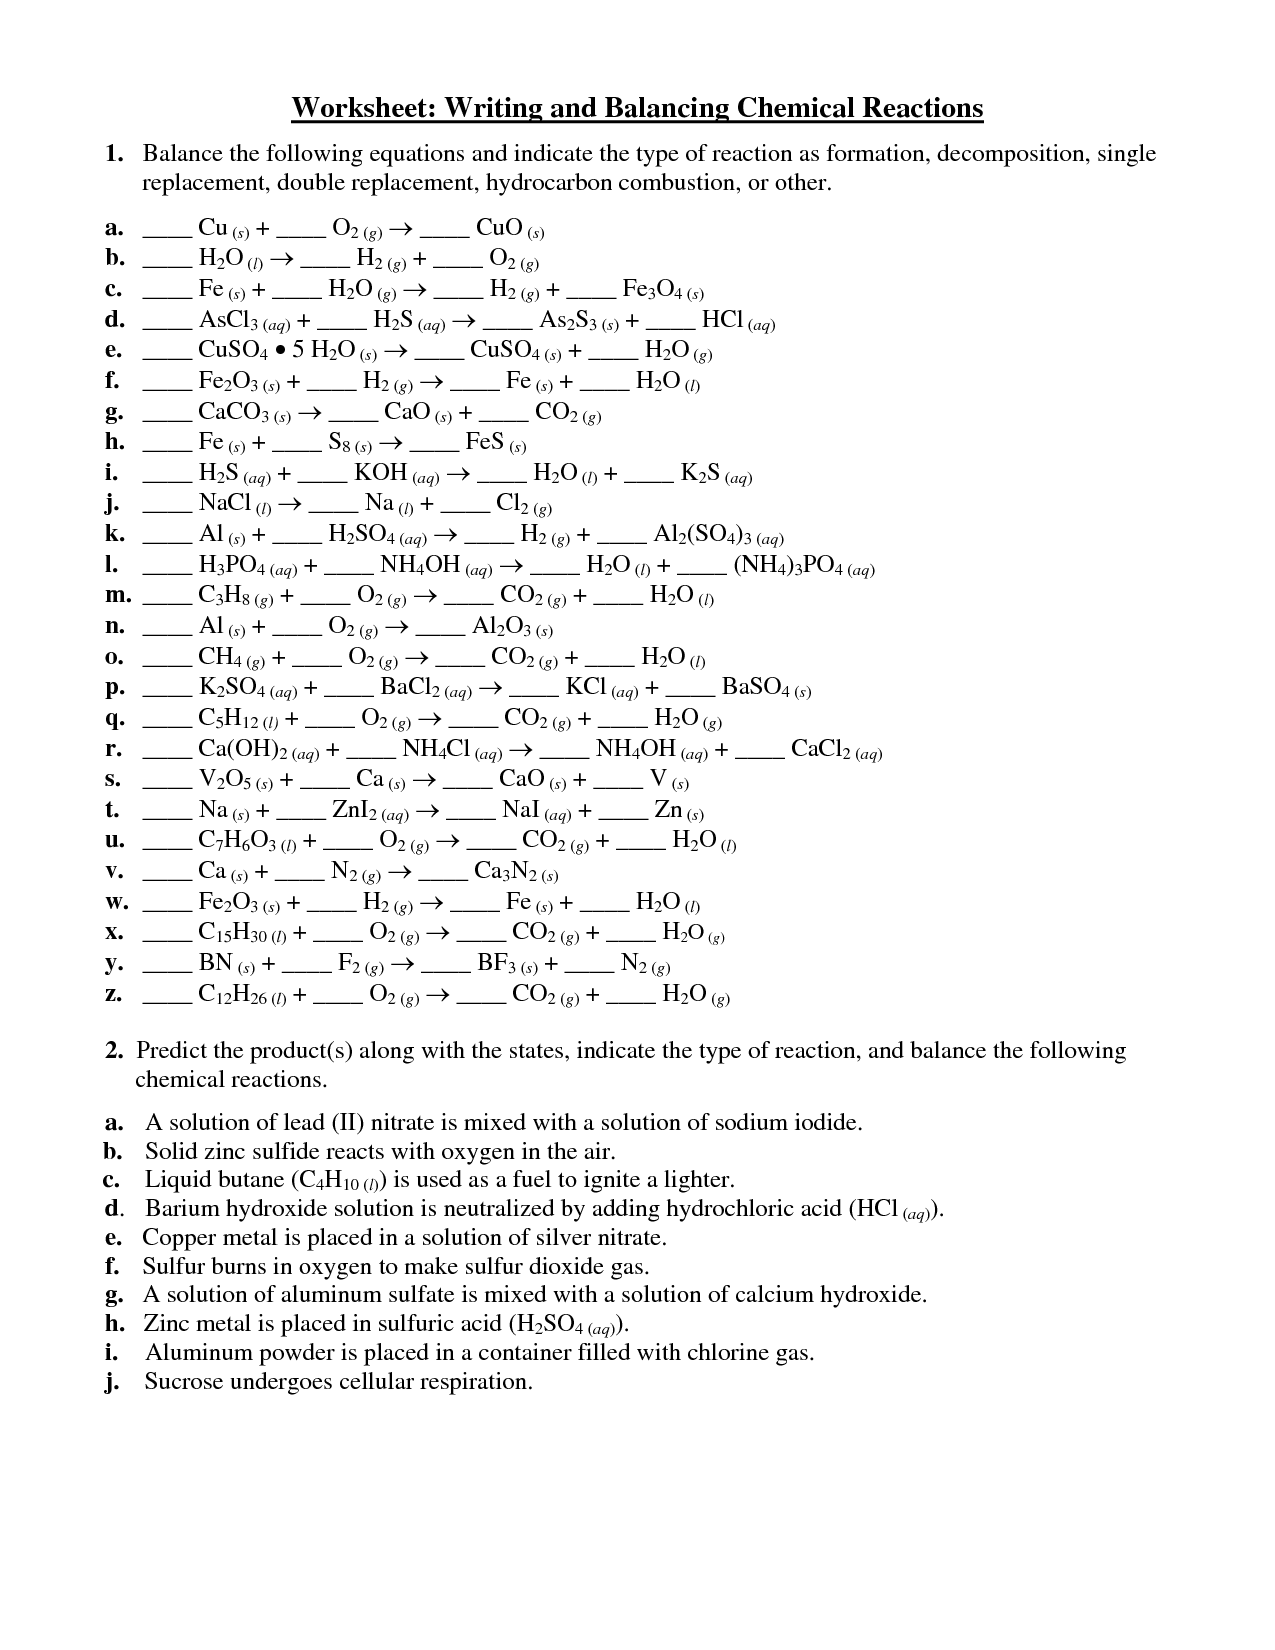 balancing-equations-sheet-answer-key